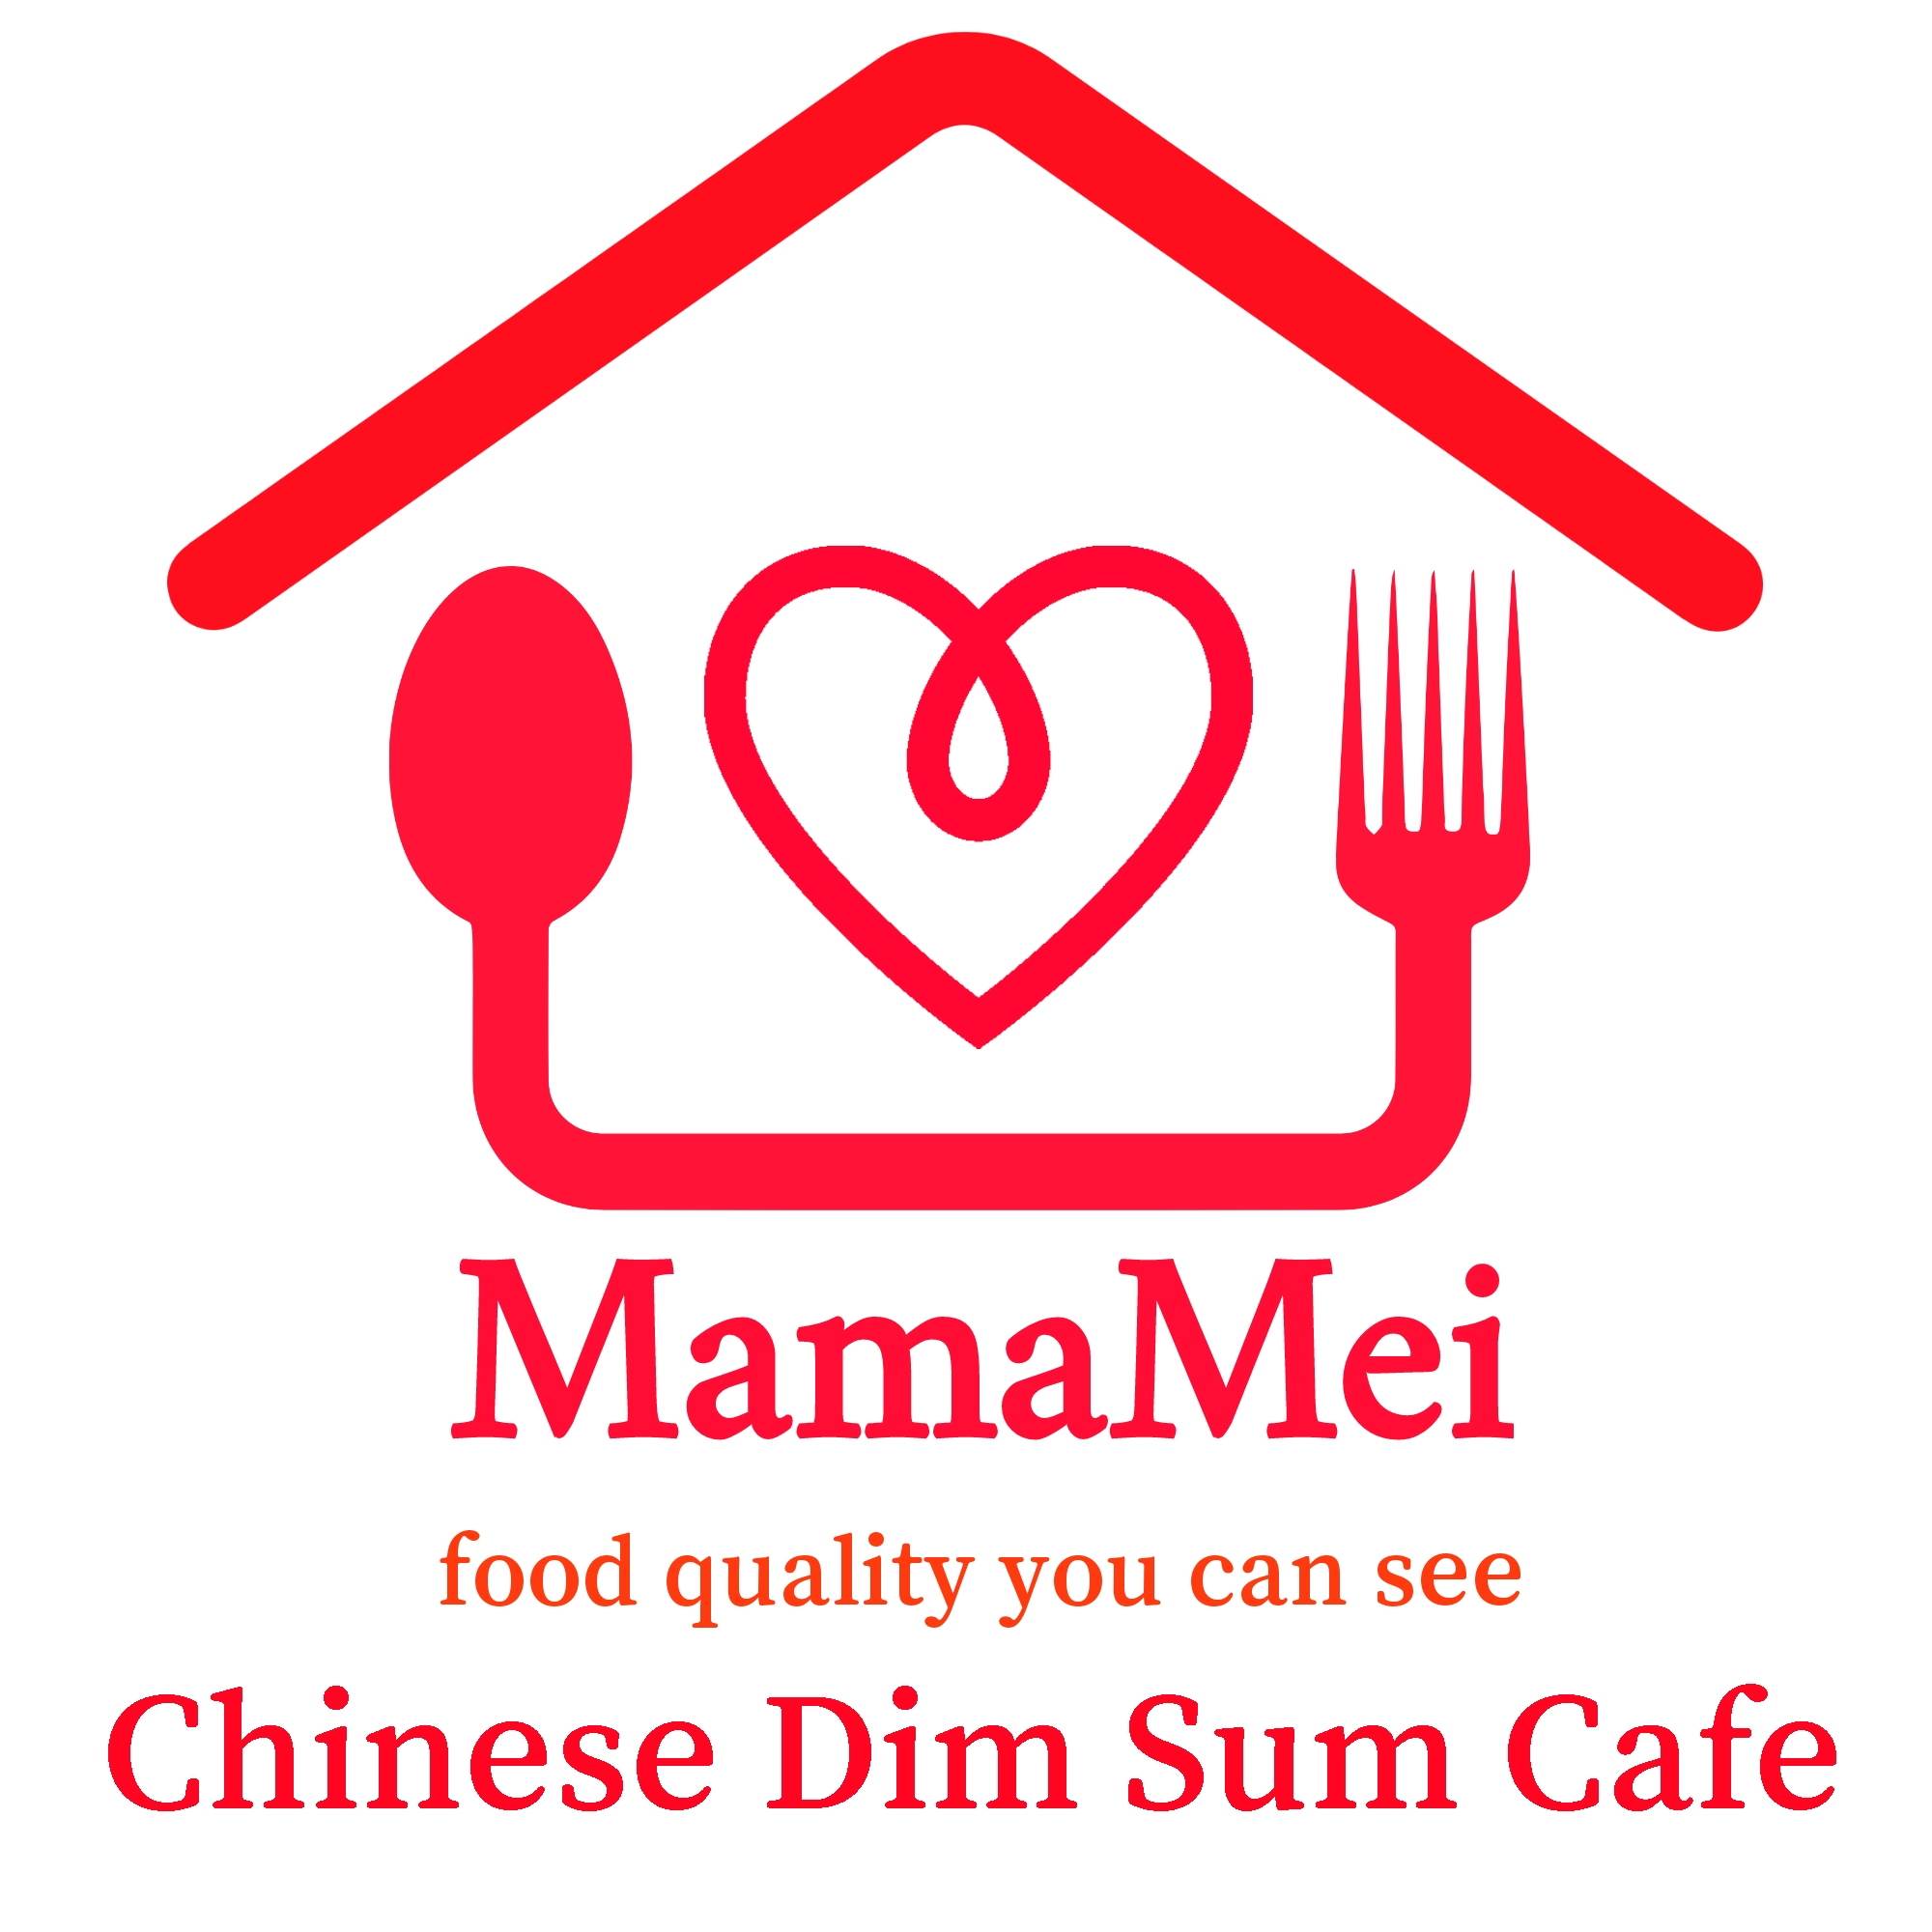 MamaMei Dim Sum Café website logo